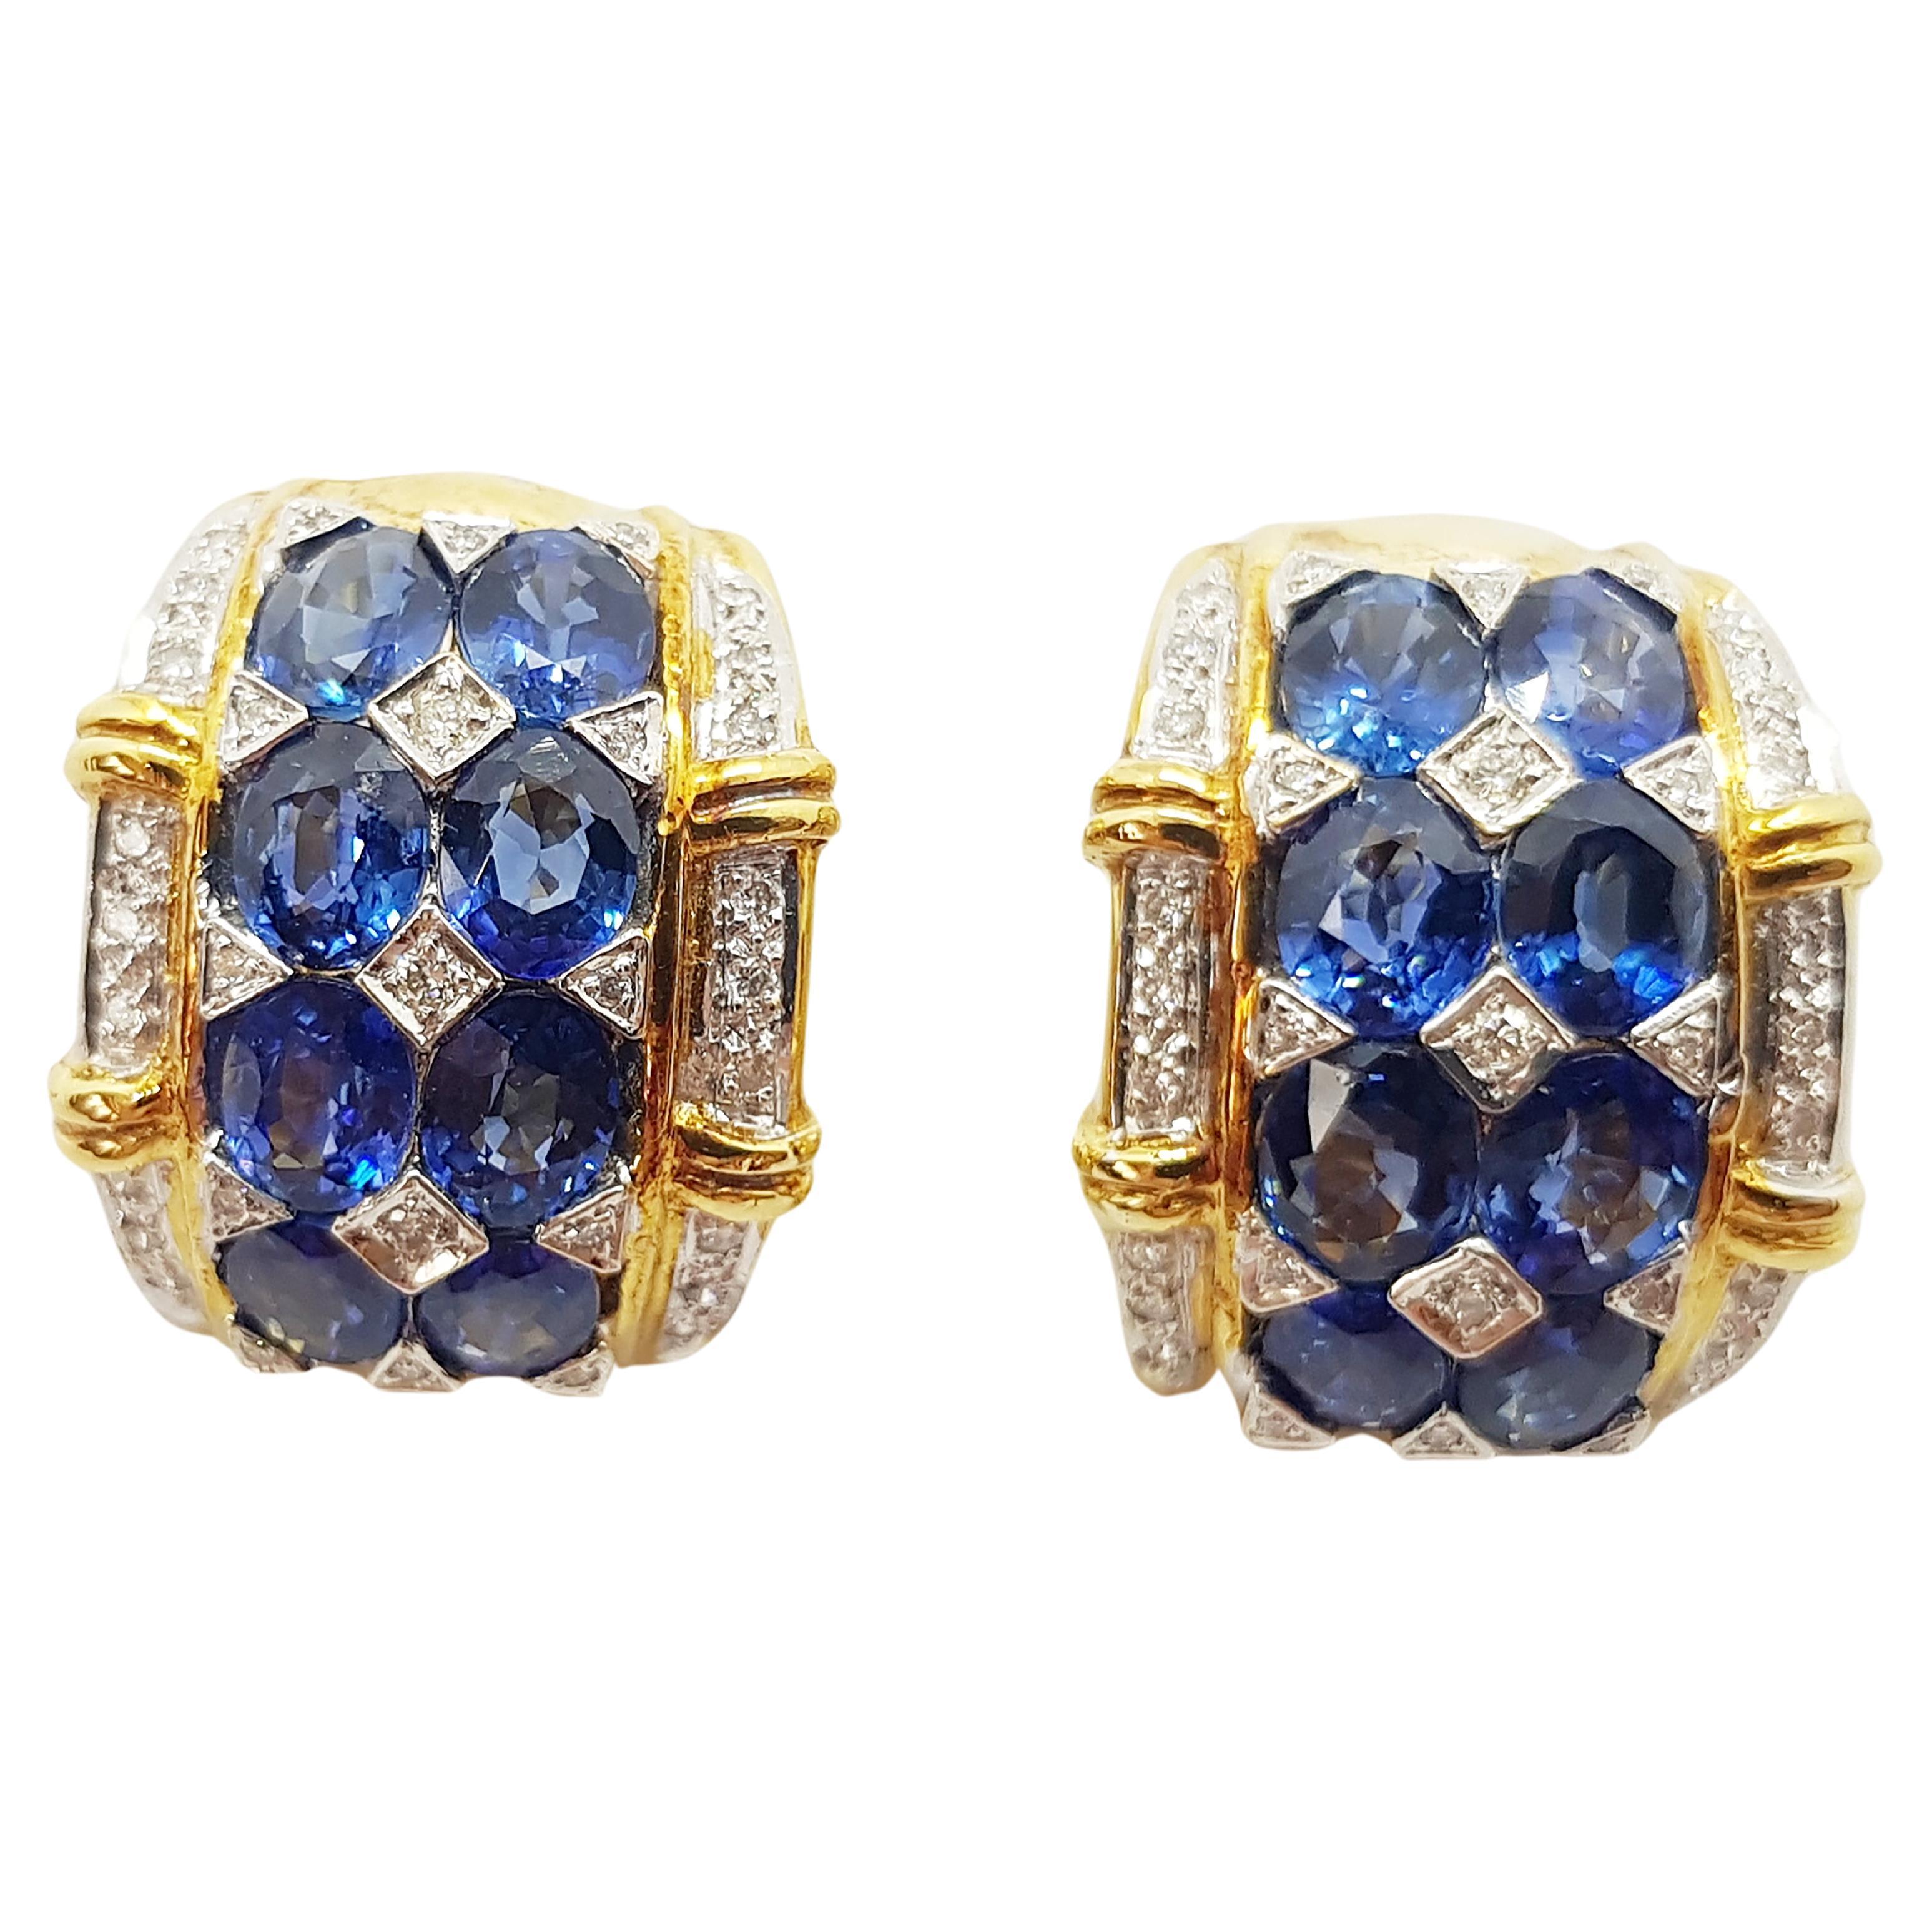 Ohrringe mit blauem Saphir und Diamanten in 18 Karat Goldfassungen